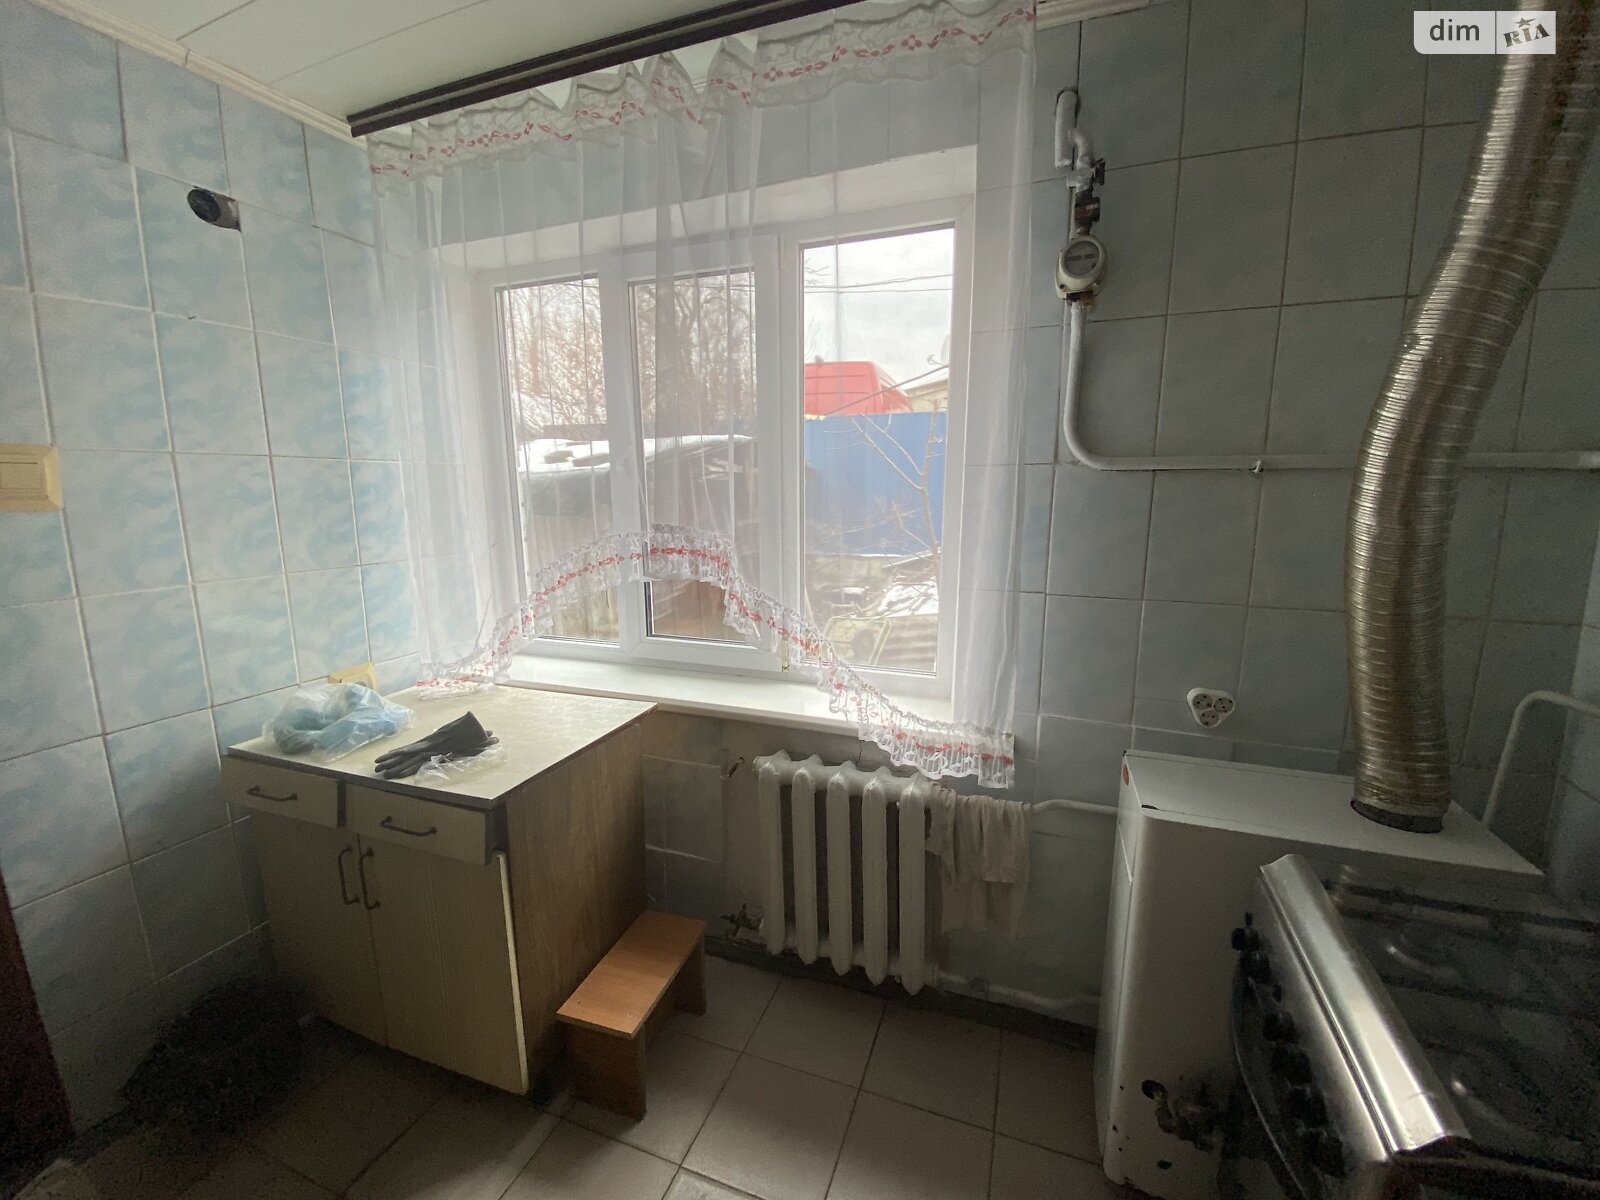 Продажа части дома в Житомире, улица Покровская, район Центр, 2 комнаты фото 1